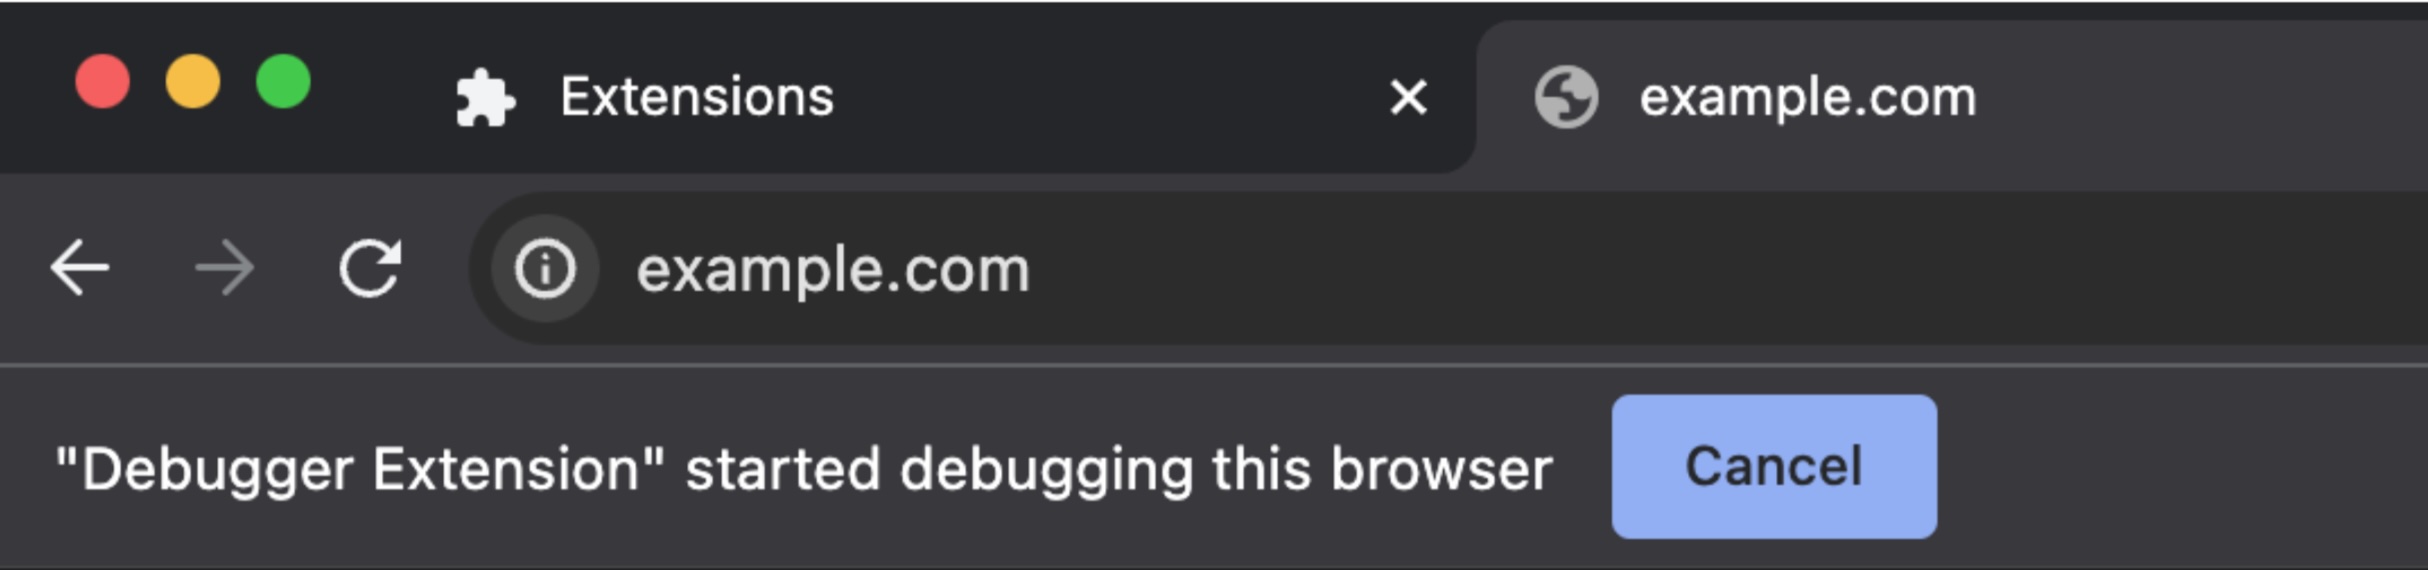 لقطة شاشة لشريط العناوين في Chrome تظهر الرسالة &quot;بدأت إضافة برنامج تصحيح الأخطاء تصحيح أخطاء هذا المتصفح&quot;